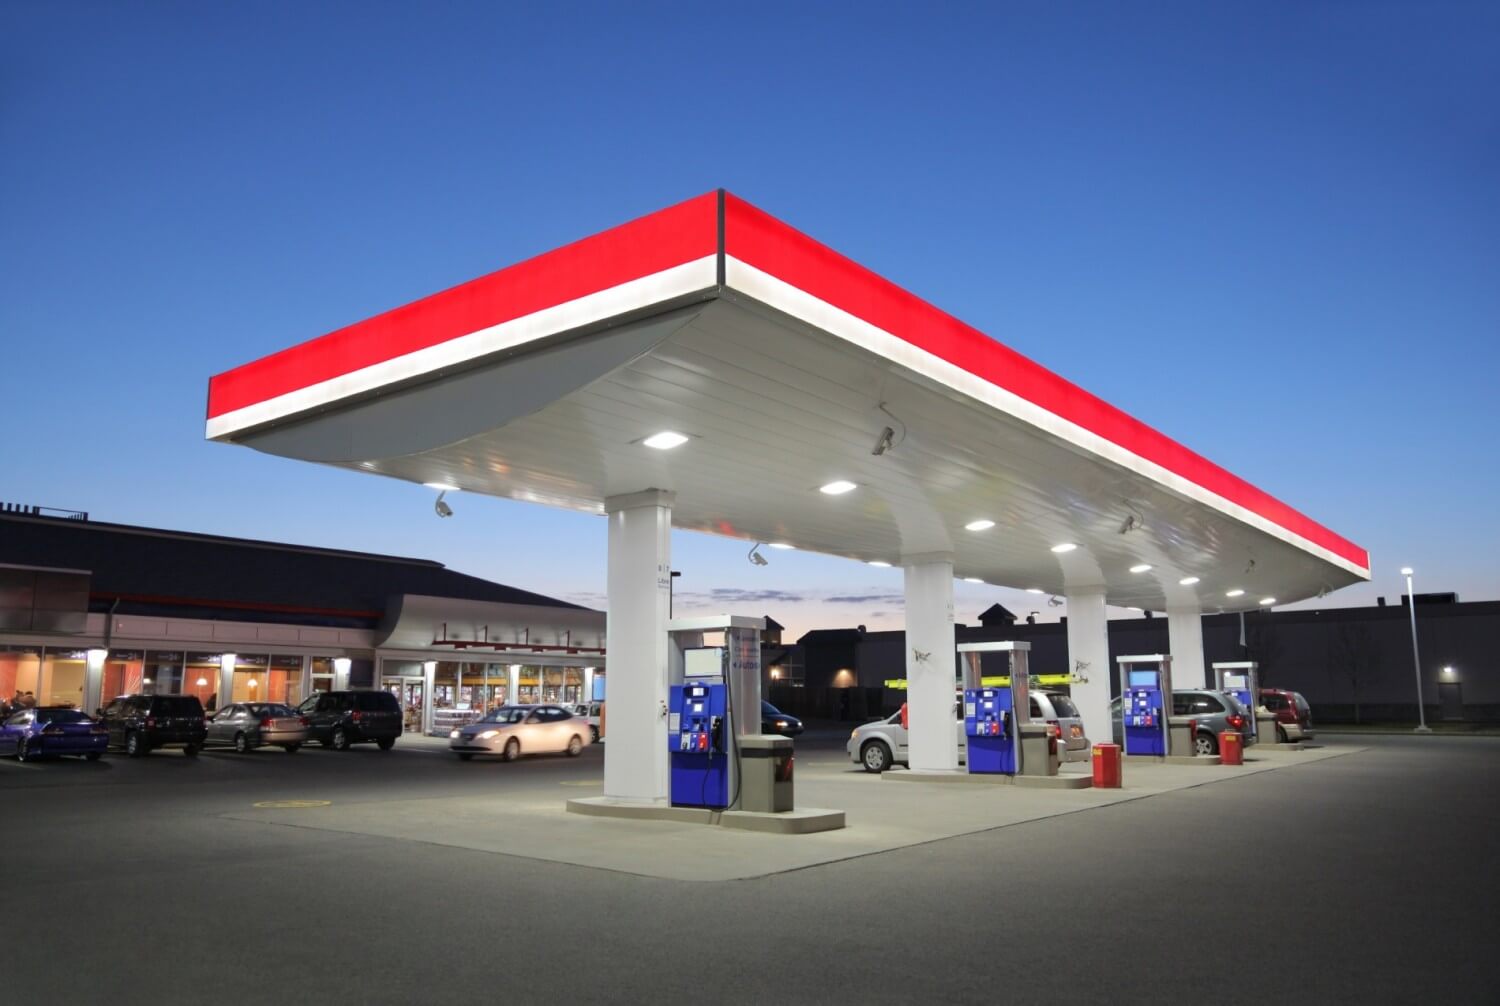 stacje benzynowe sprzedają niewydane paragony fiskalne